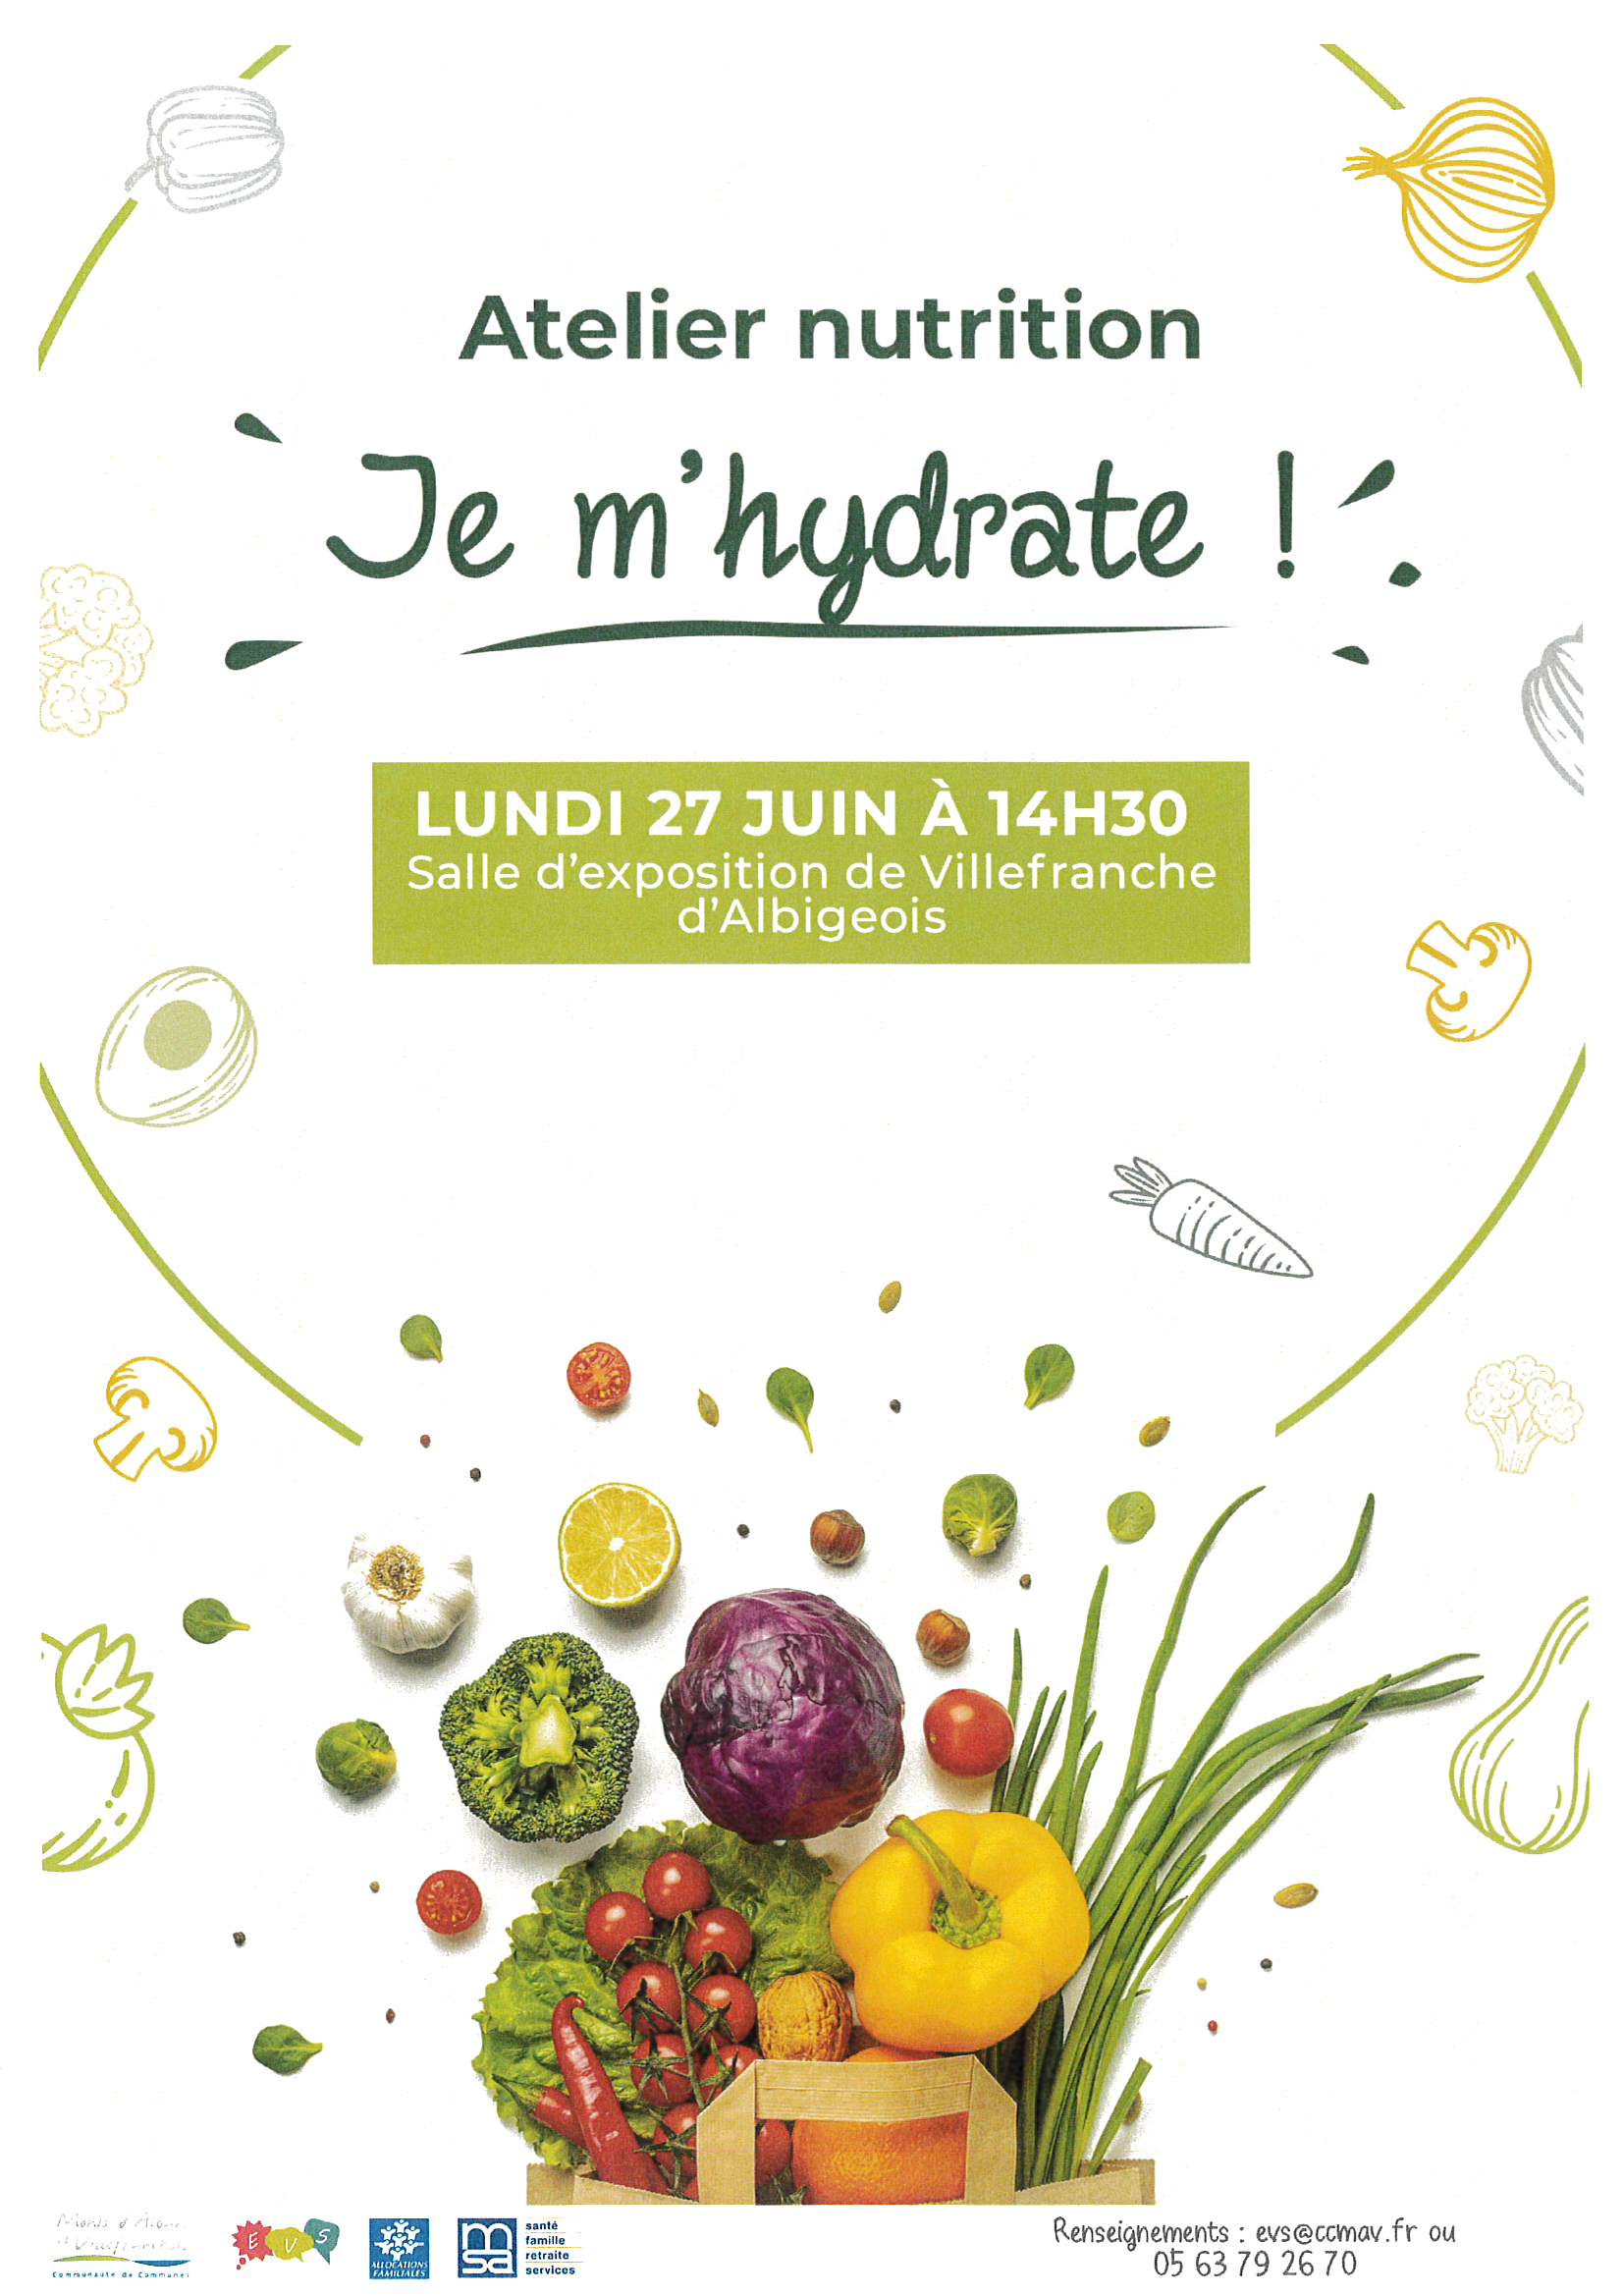 Atelier nutrition : "je m'hydrate"